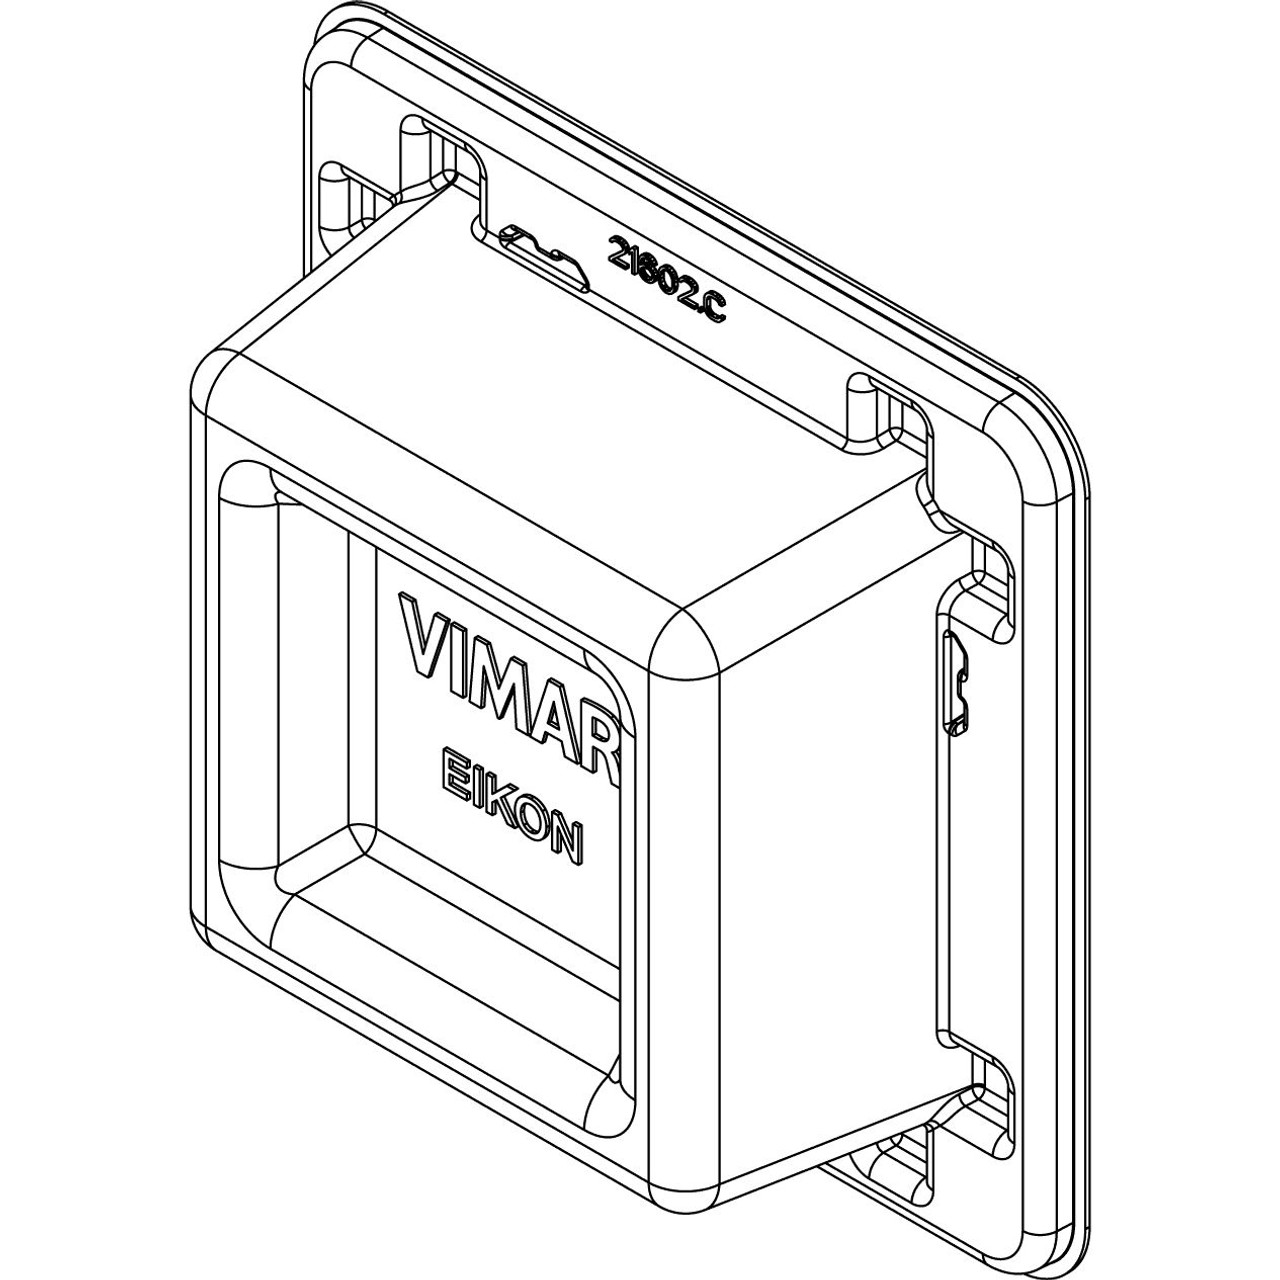 Vimar - Eikon 21602 Mounting Frame - Plastic, 2 Module - Apollo Lighting